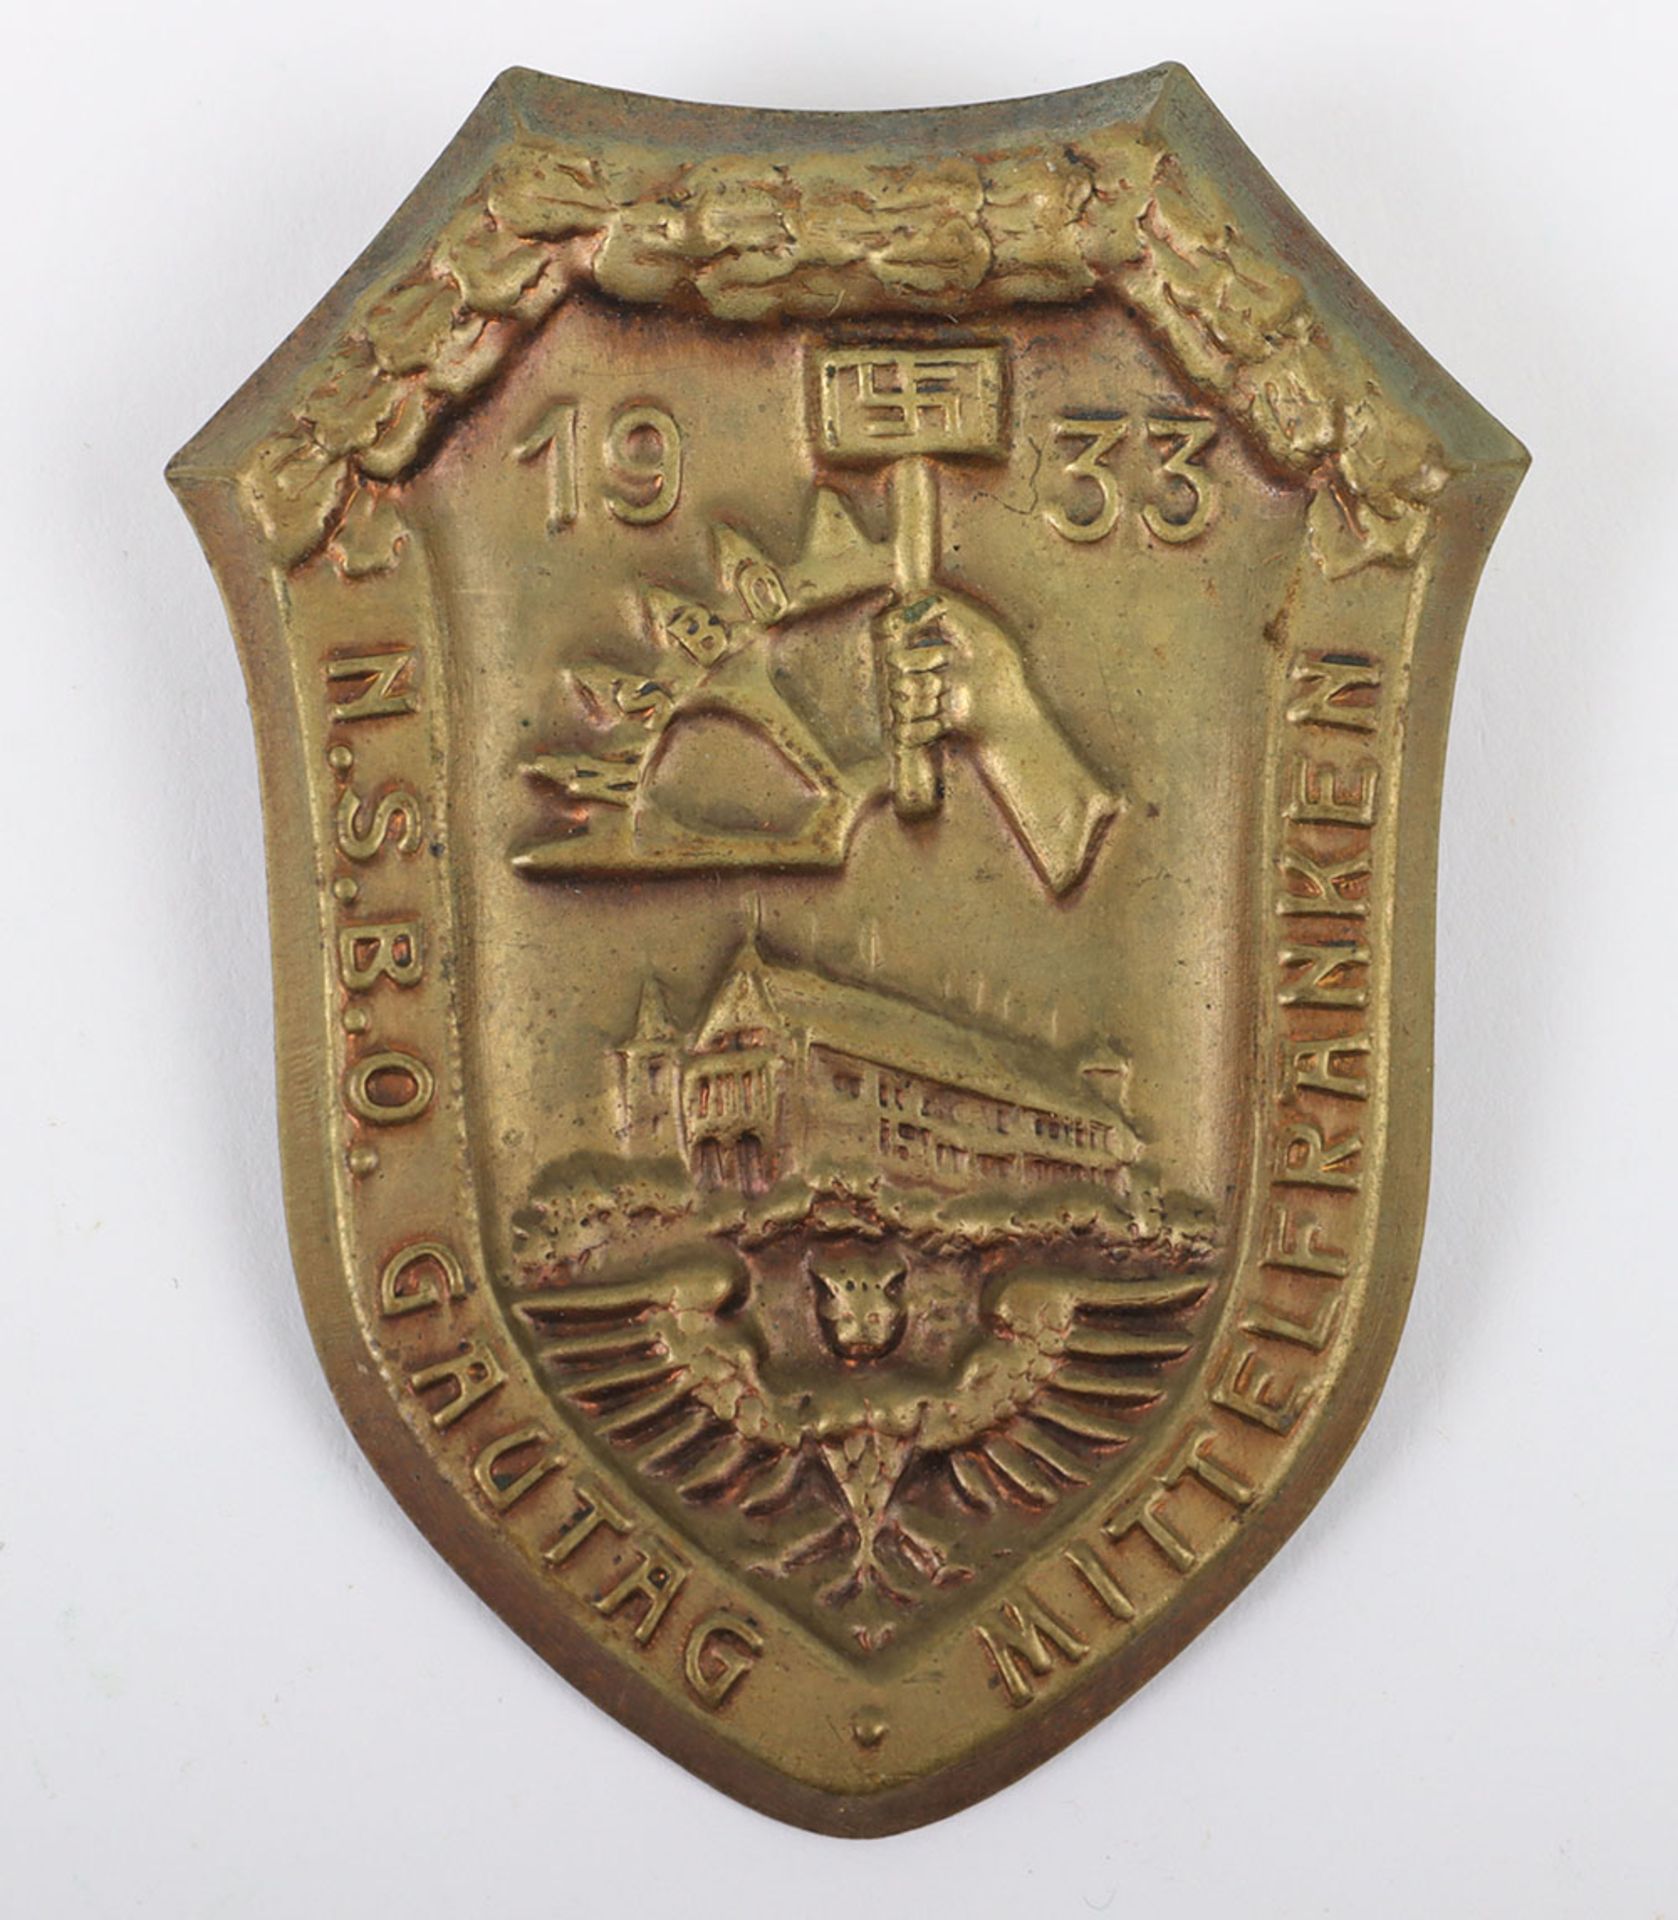 Third Reich N.S.B.O Gautag Mittelfranken 1933 Day Badge - Image 2 of 3